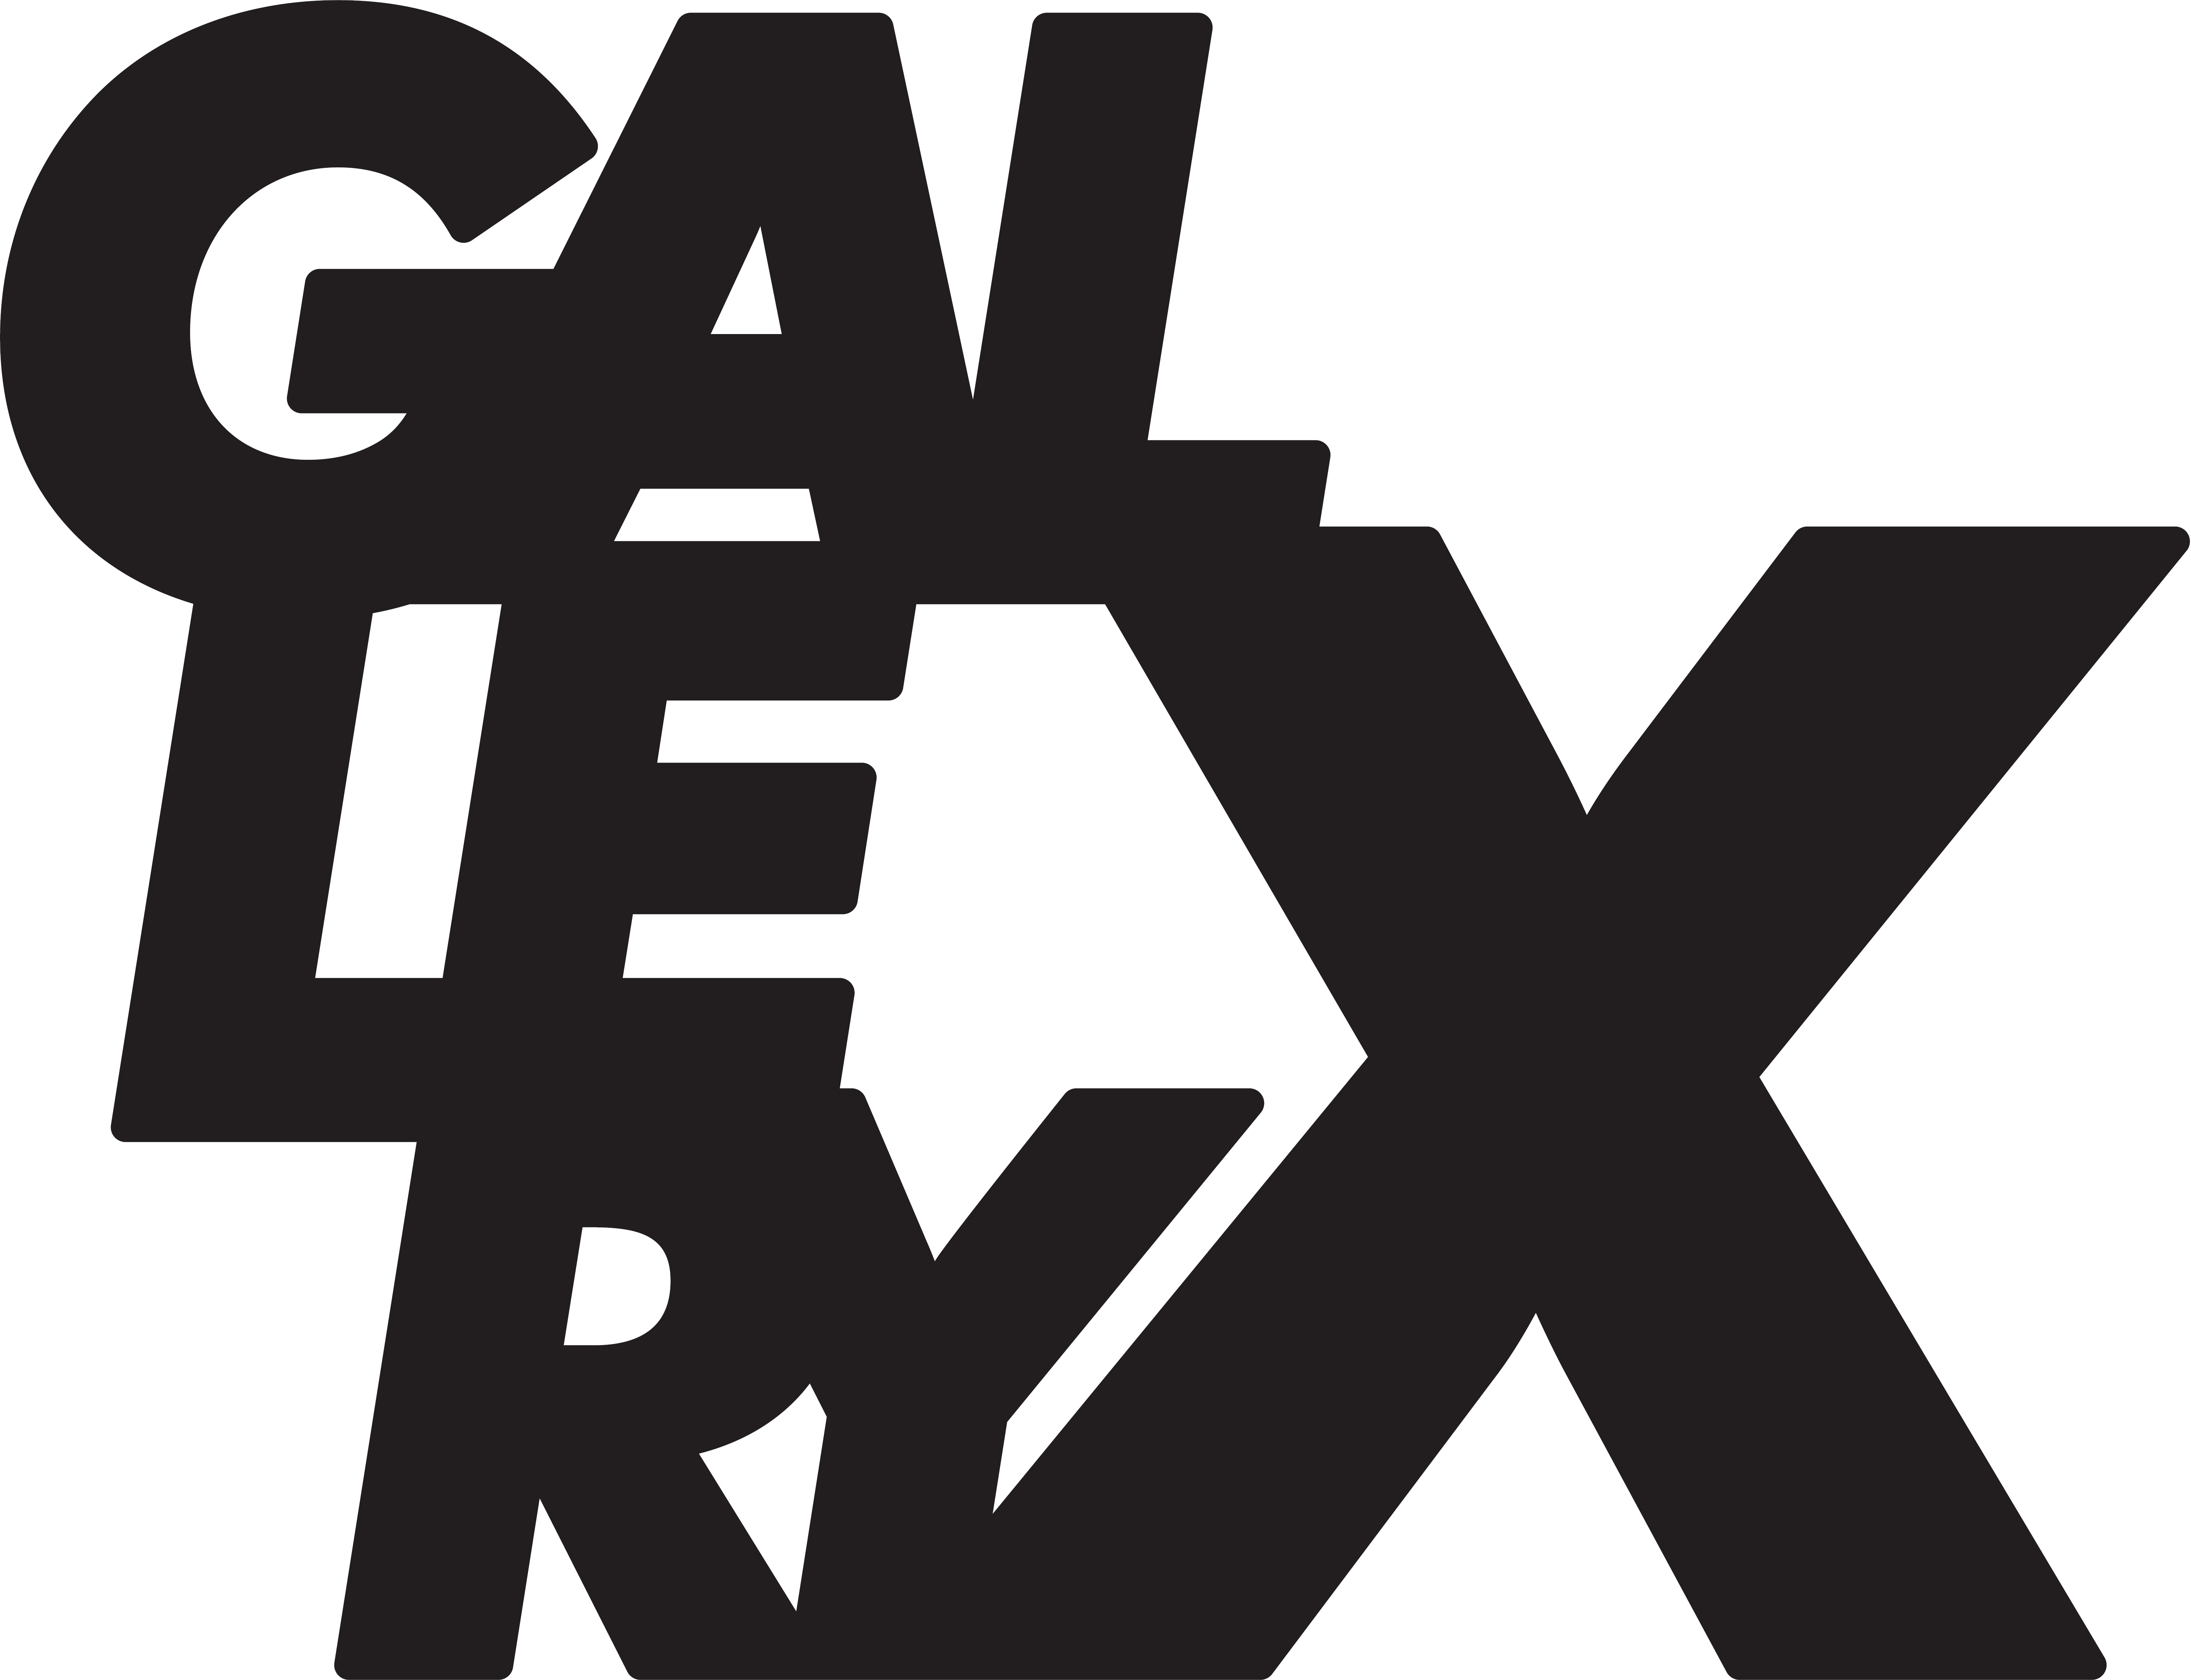 渋谷に新たなカルチャー発信拠点が登場 Gallery X By Parco ギャラリー エックス バイ パルコ 12月9日 金 オープン 株式会社パルコのプレスリリース